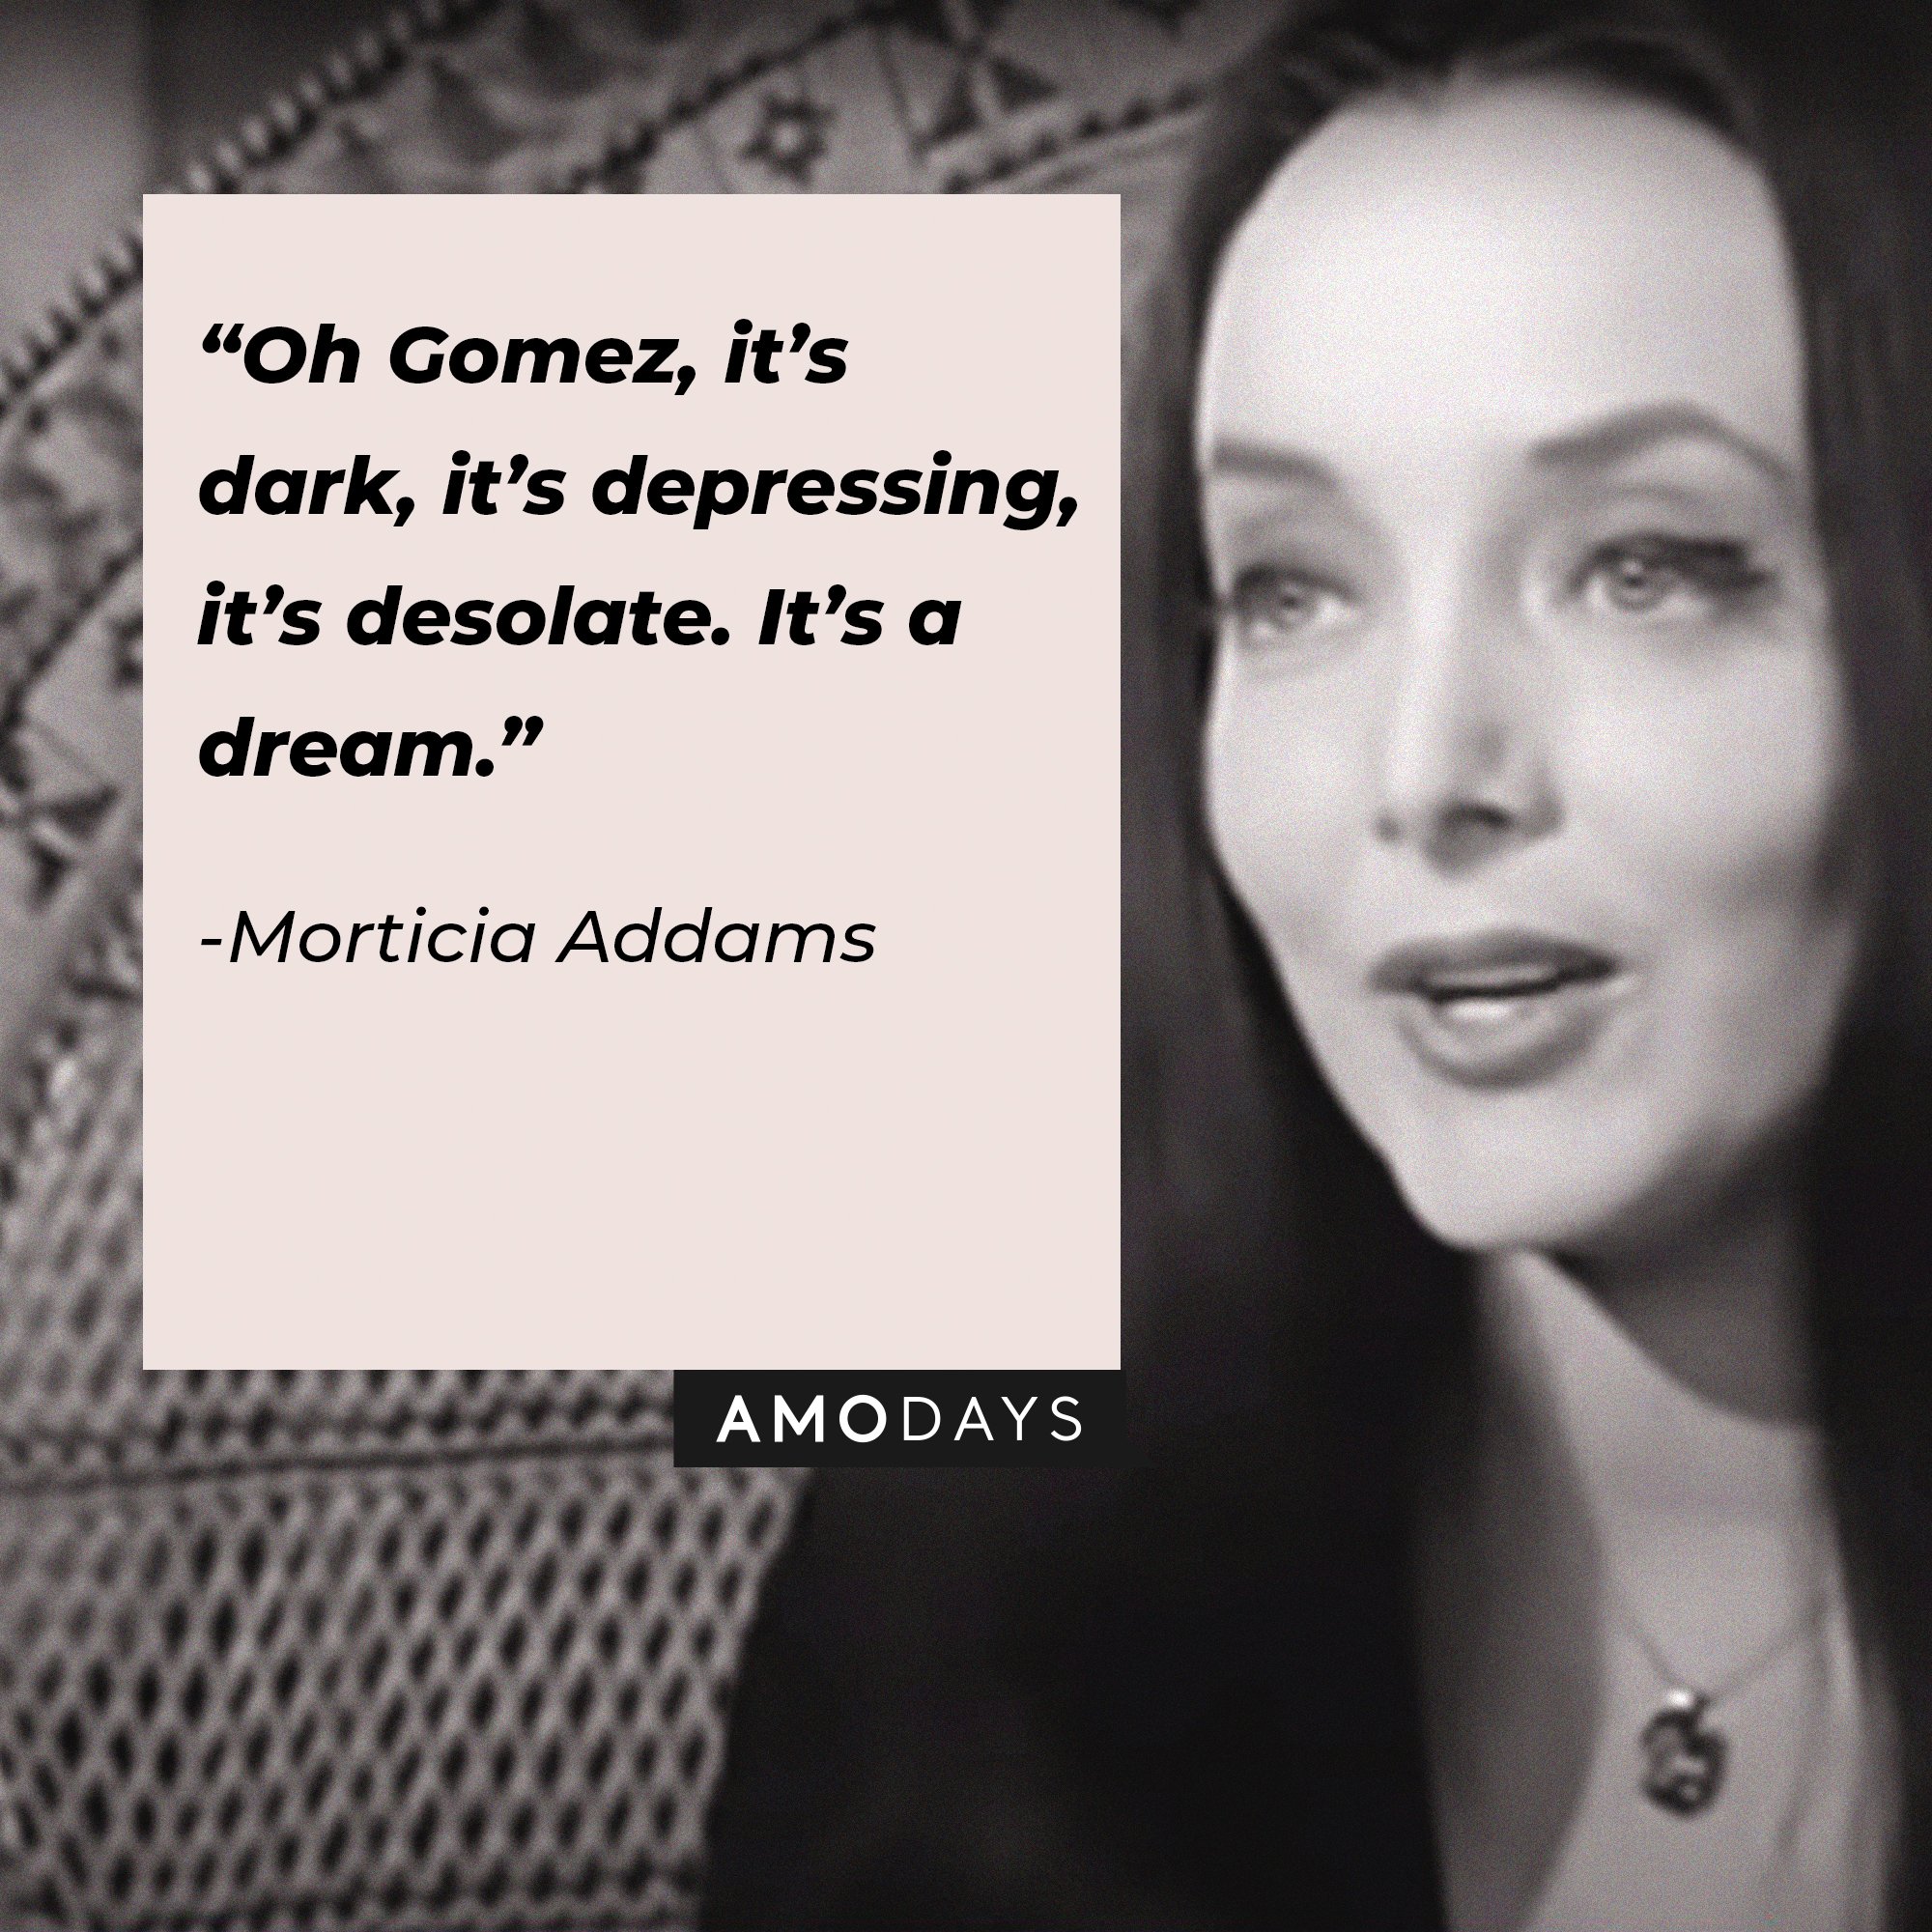 Morticia Addams’ quote: “Oh Gomez, it’s dark, it’s depressing, it’s desolate. It’s a dream.” | Image: AmoDays